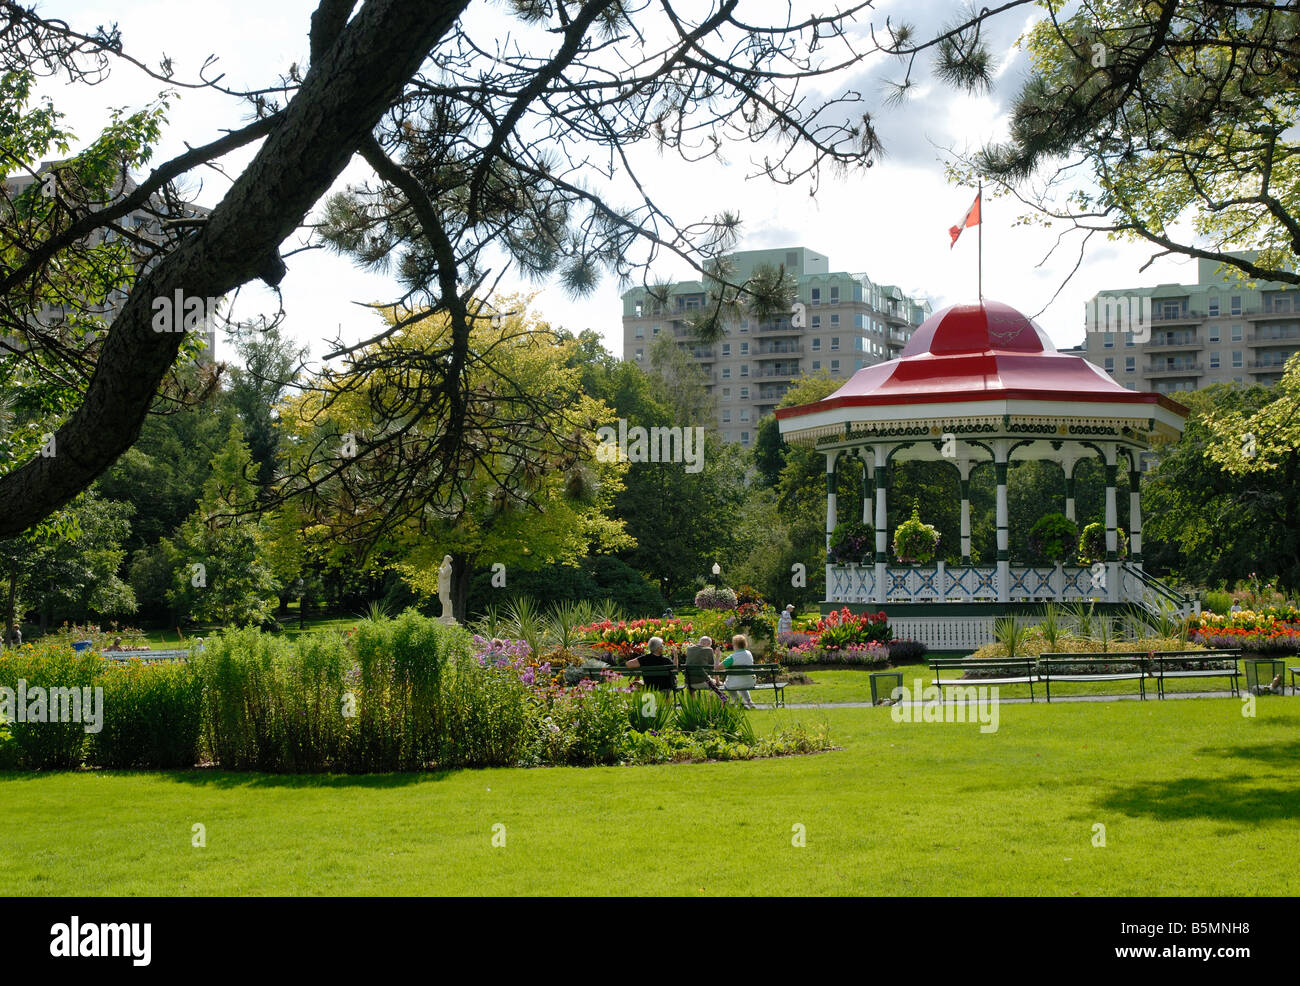 Les jardins publics, Halifax, Nouvelle-Écosse Banque D'Images